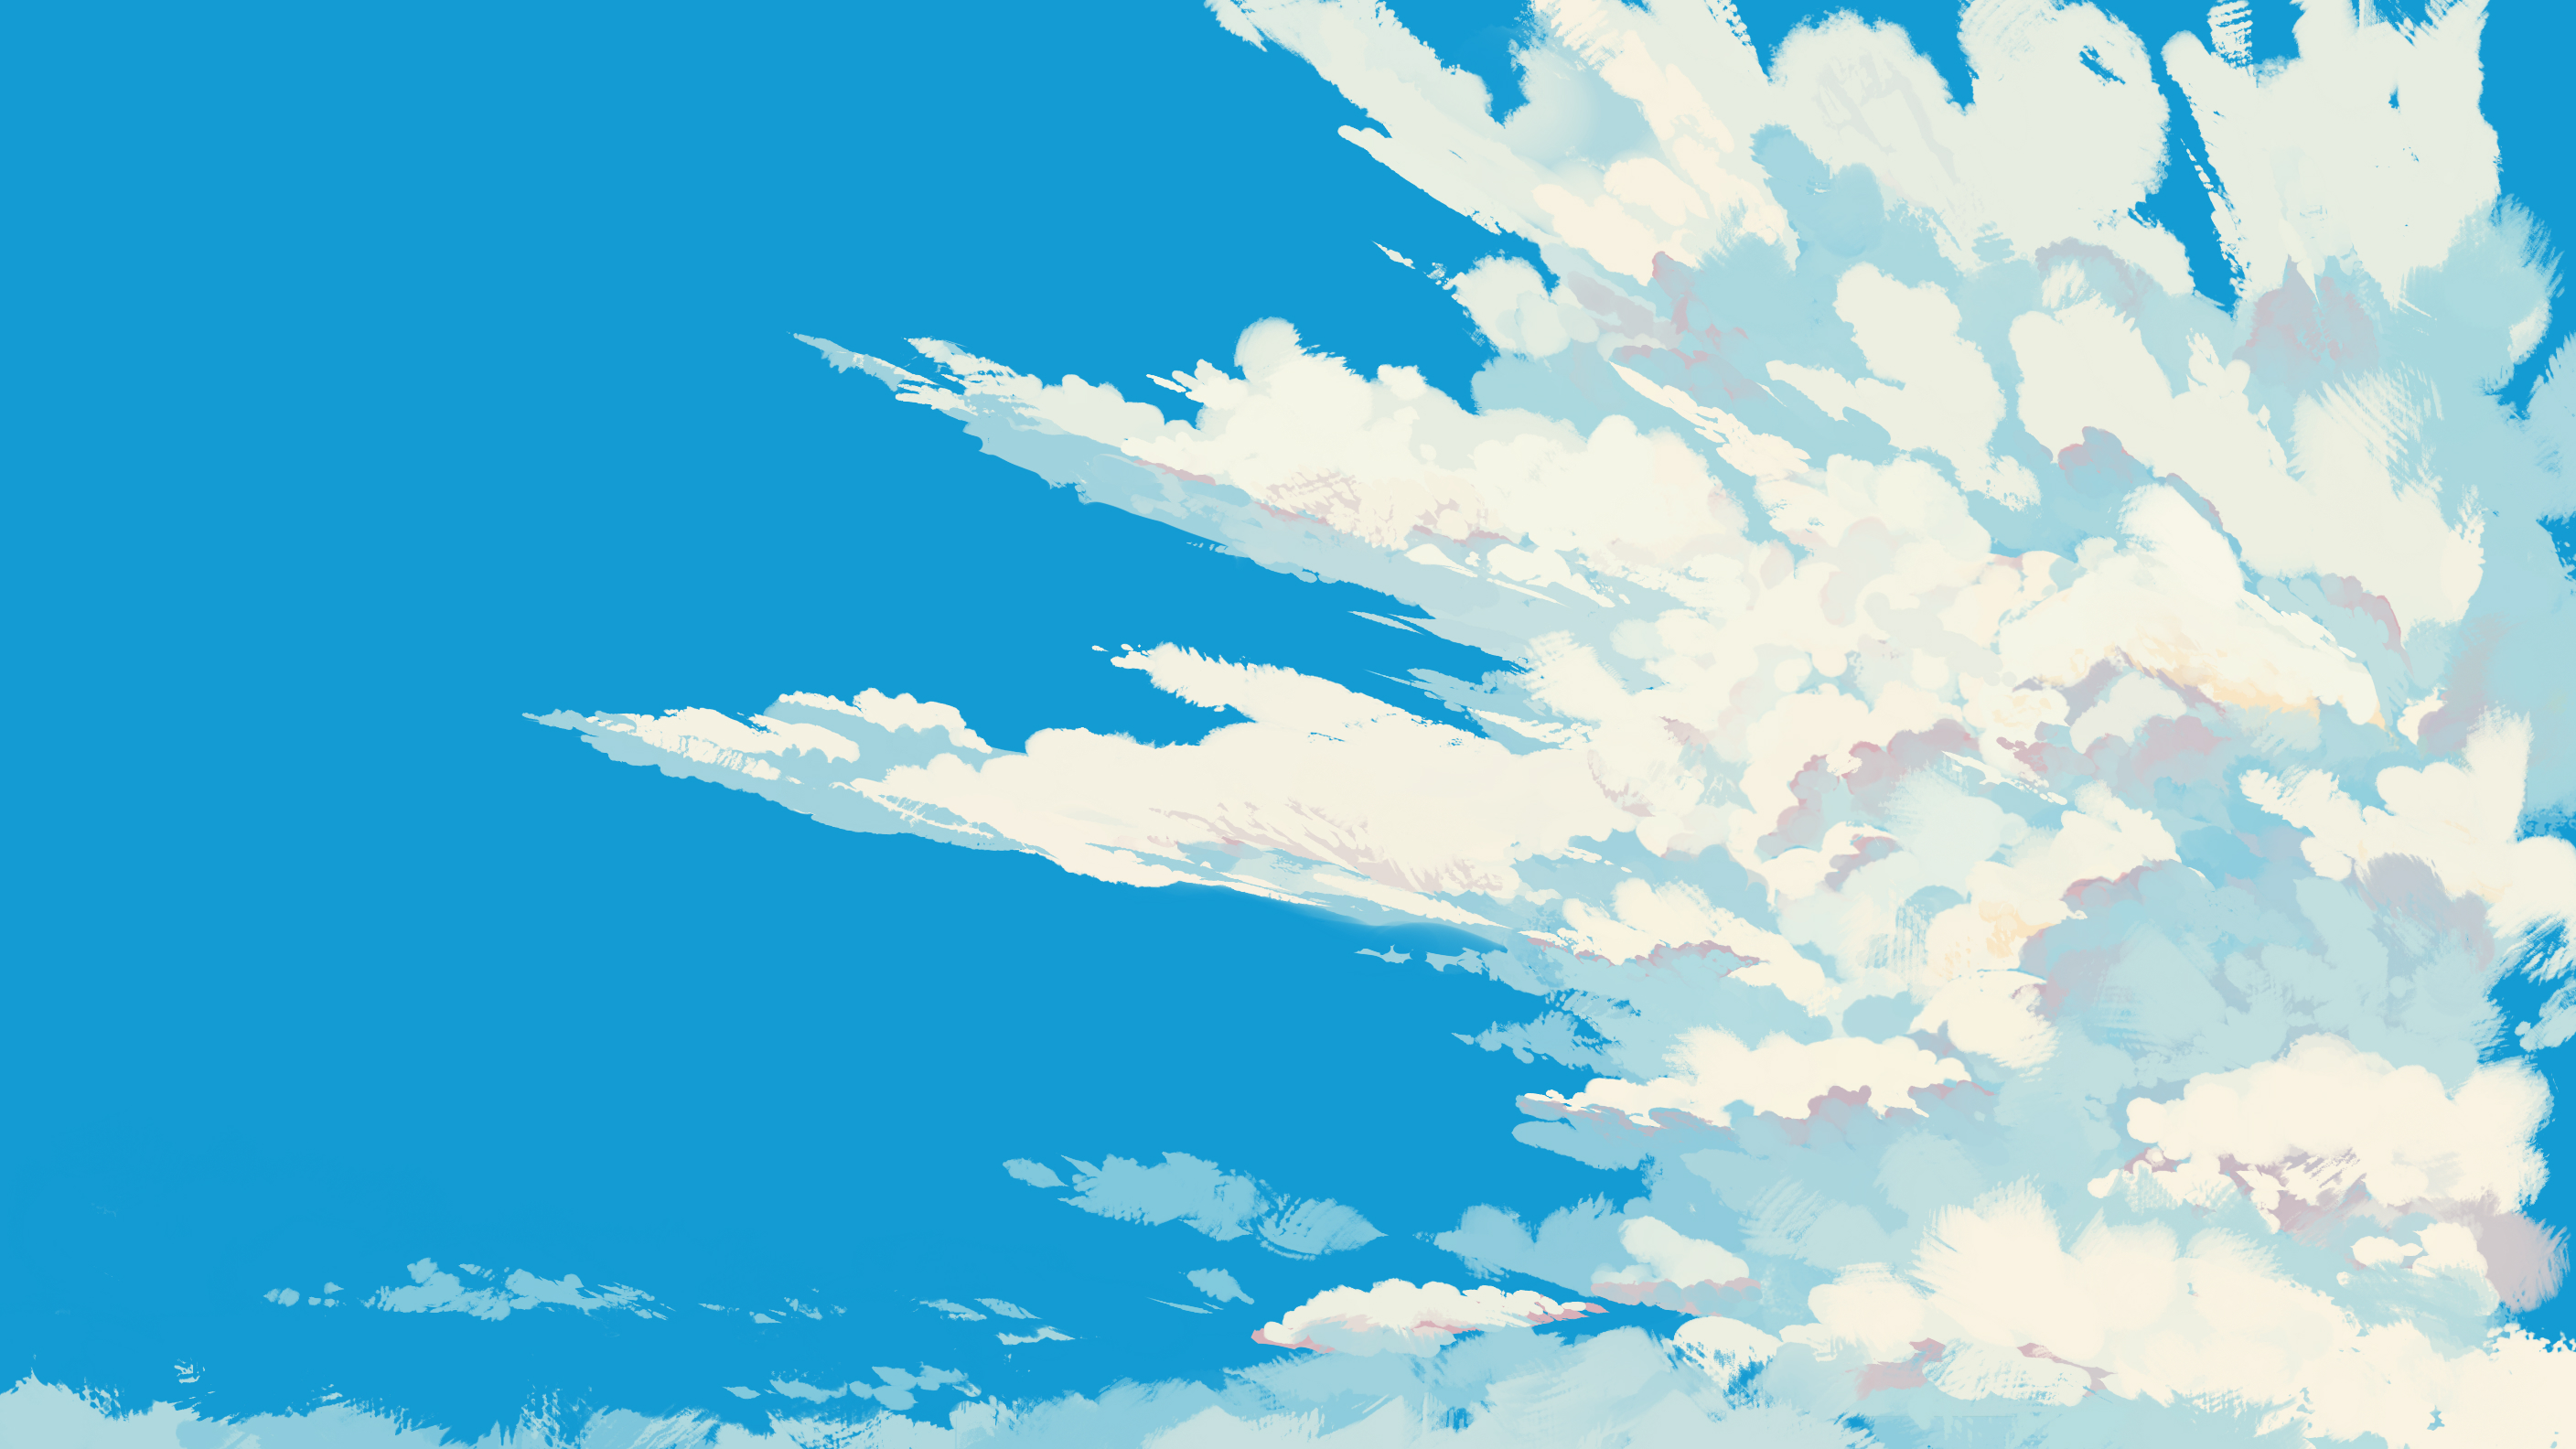 General 2816x1584 digital art illustration clouds sky nature blue minimalism simple background artwork blue background